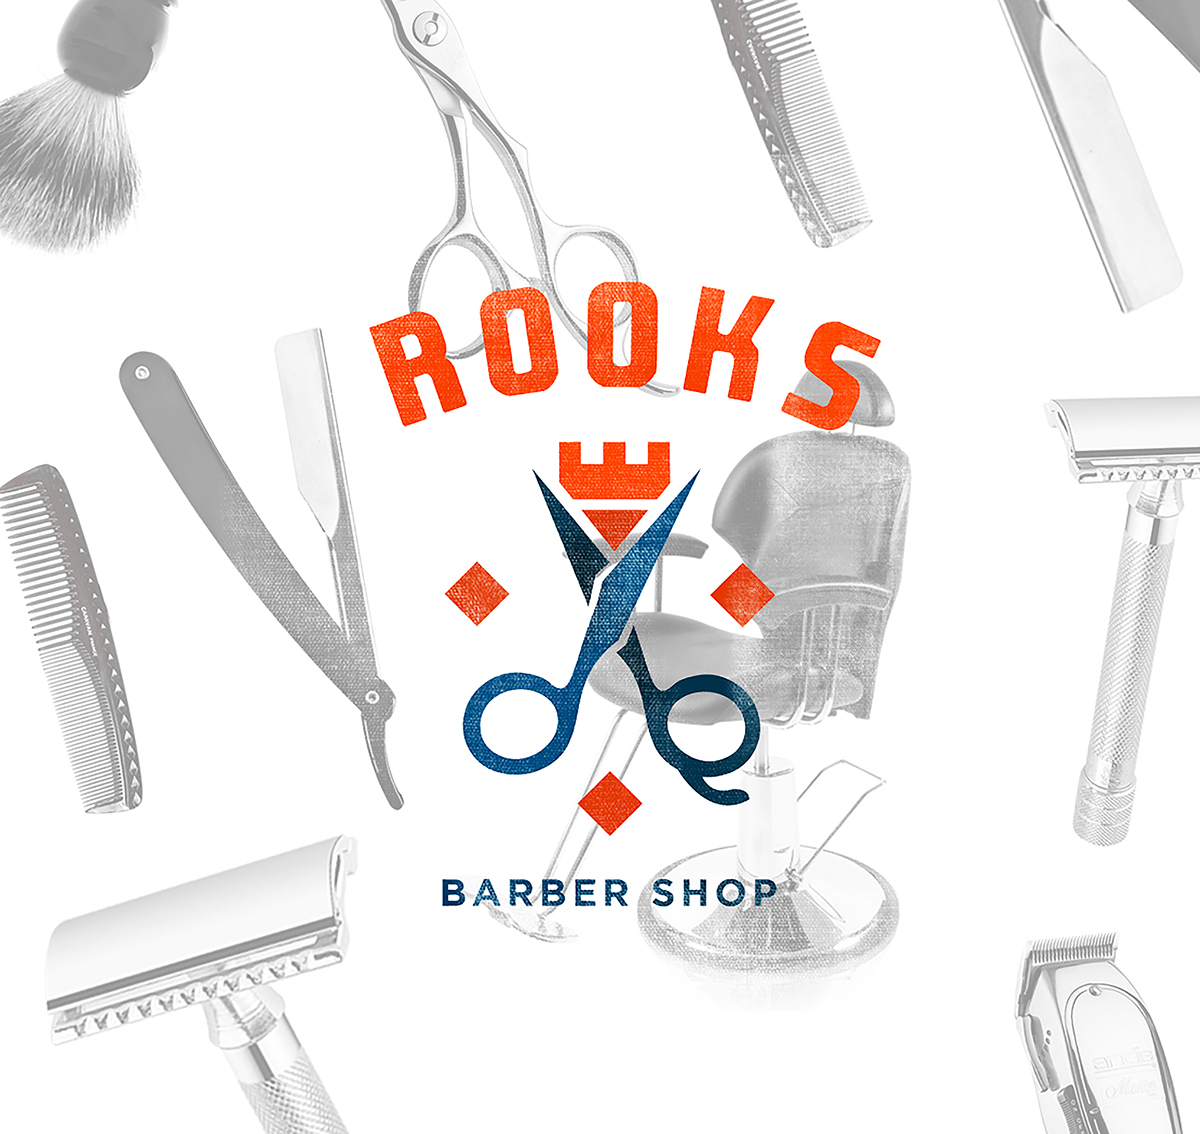 Website businesscards barbershop design brand logodesign